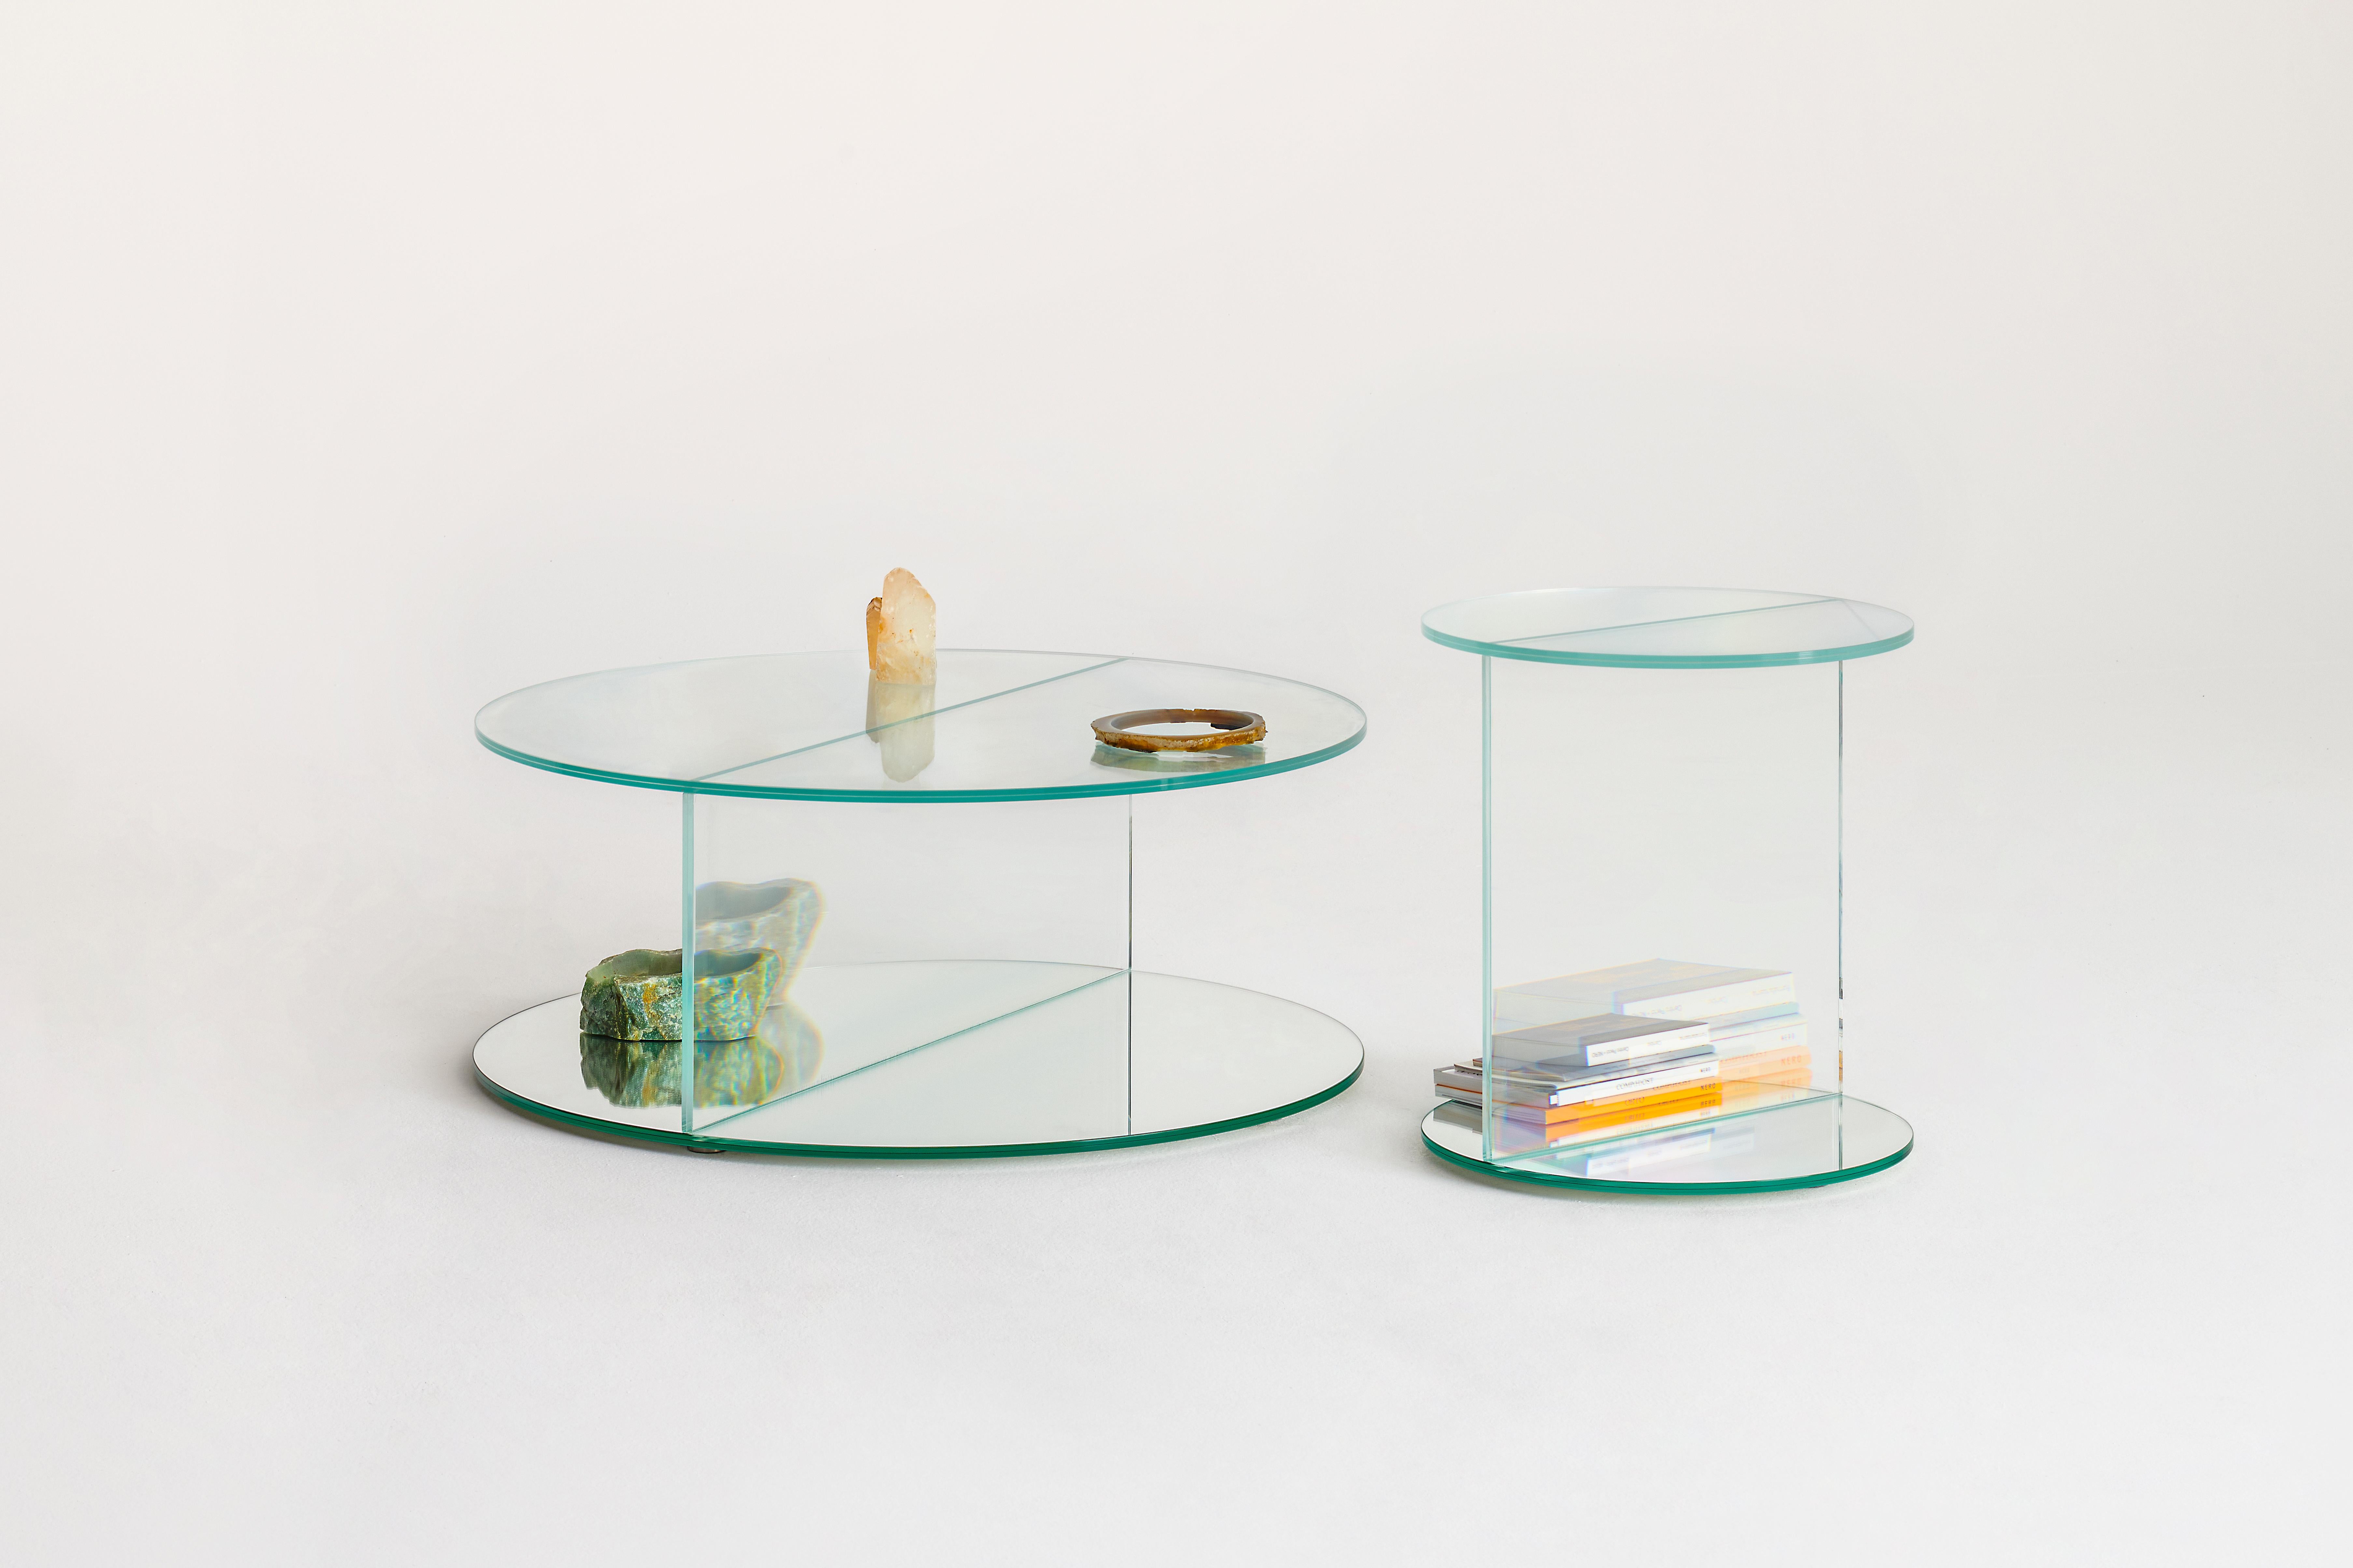 Collection de tables basses, de meubles de rangement et de consoles de forme carrée ou ronde réalisés avec un verre feuilleté innovant qui crée d'extraordinaires illusions d'optique et de merveilleux effets surréalistes.
Les objets contenus dans